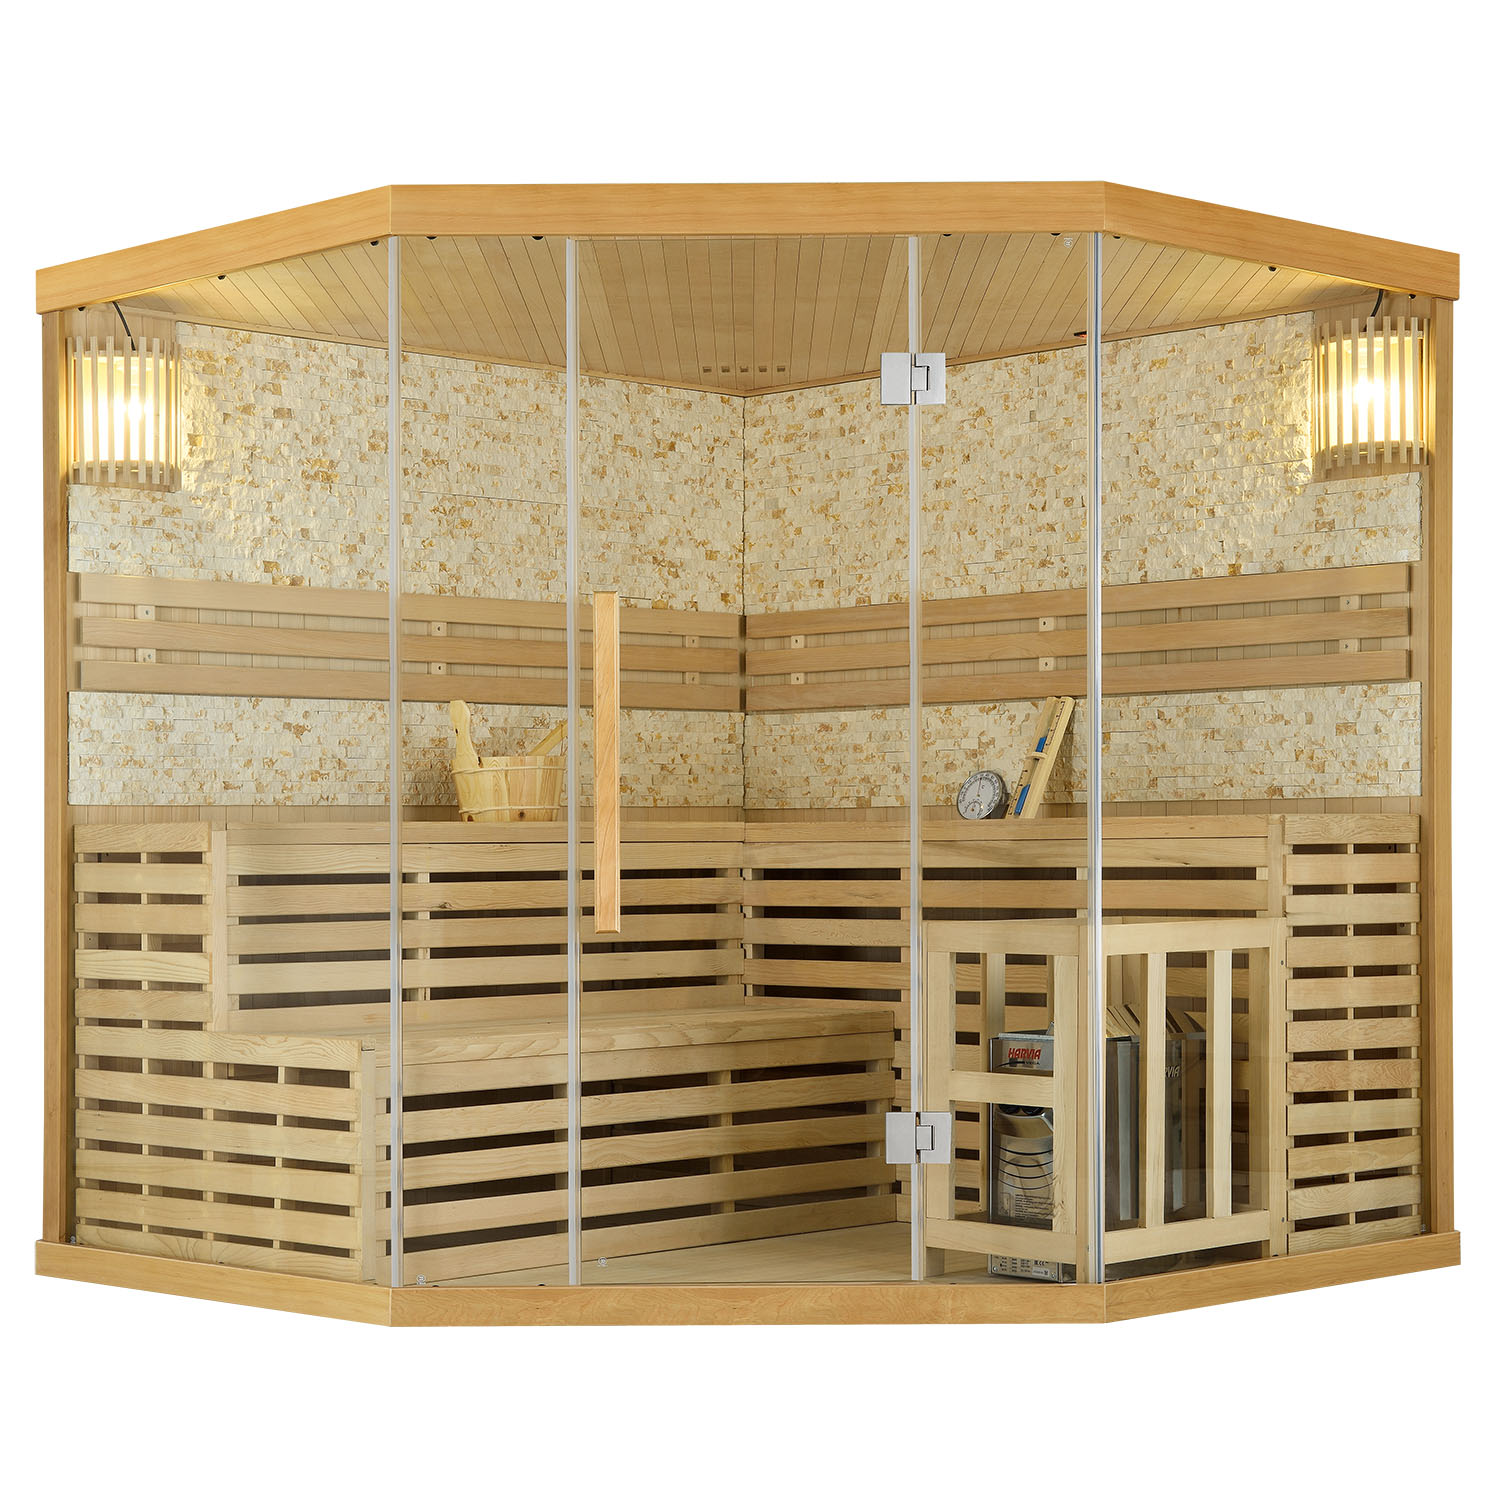 Levně Juskys Tradiční saunová kabina / finská sauna Espoo200 s kamennou stěnou Premium - 200 x 200 cm 8 kW